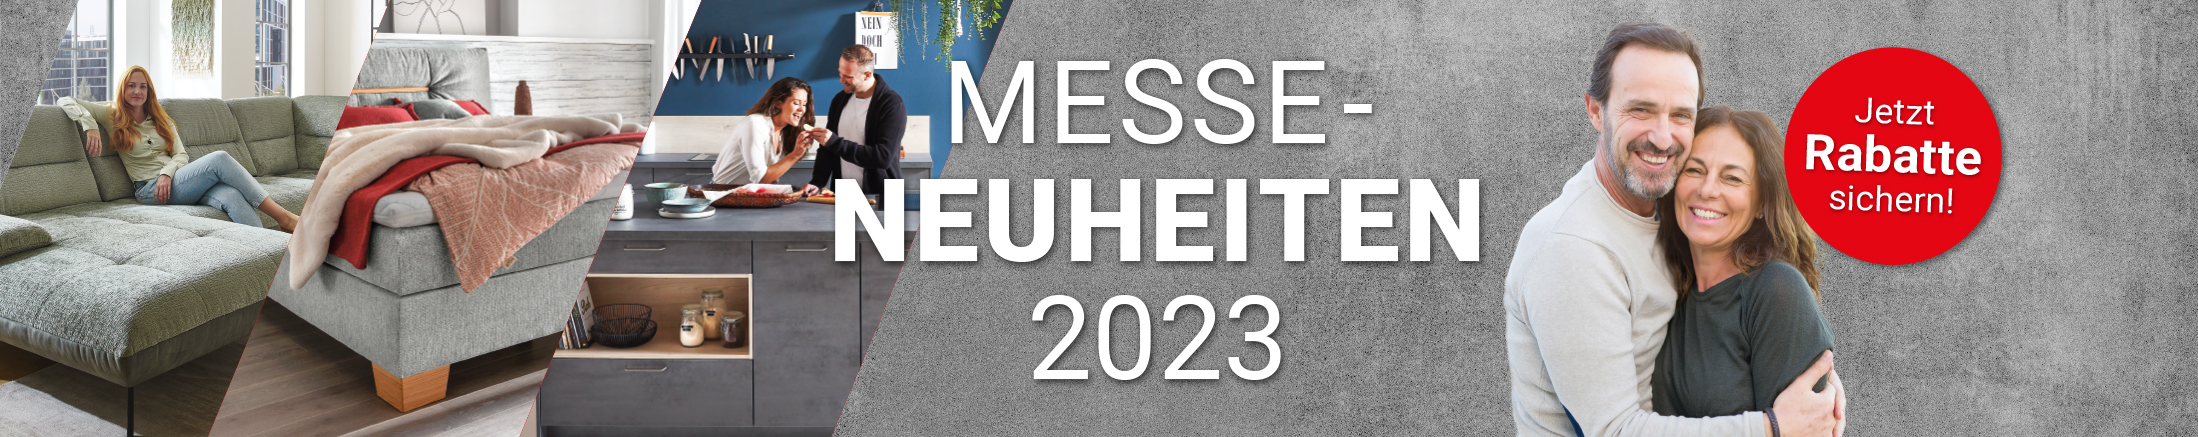 Jetzt Rabatte sichern bei Möbel Hartwig: Messe-Neuheiten 2023